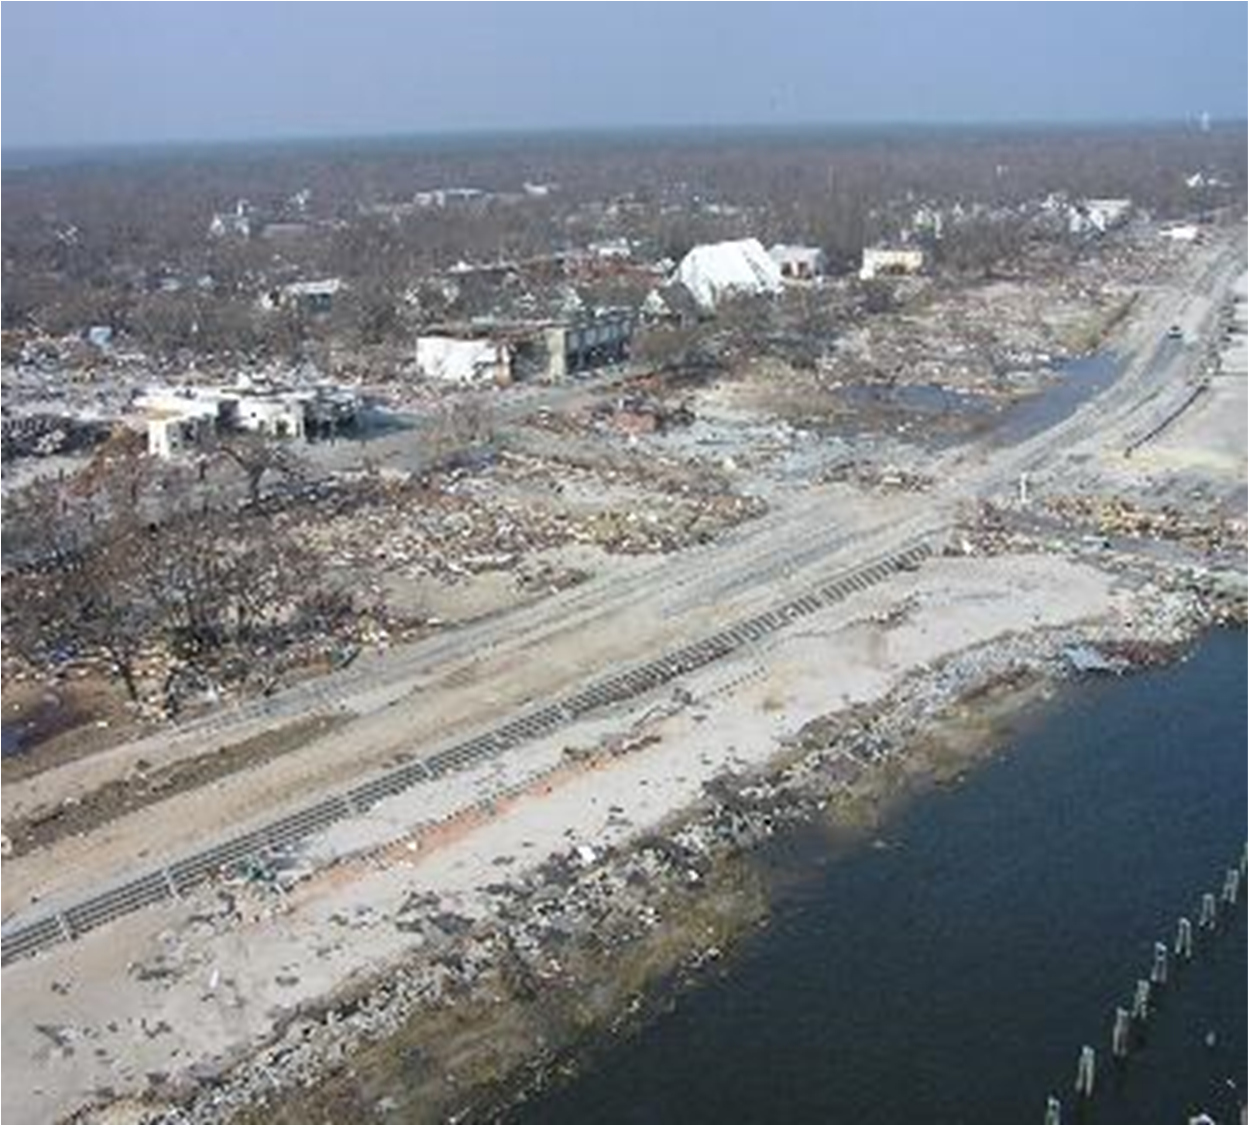 Damage from Hurricane Katrina